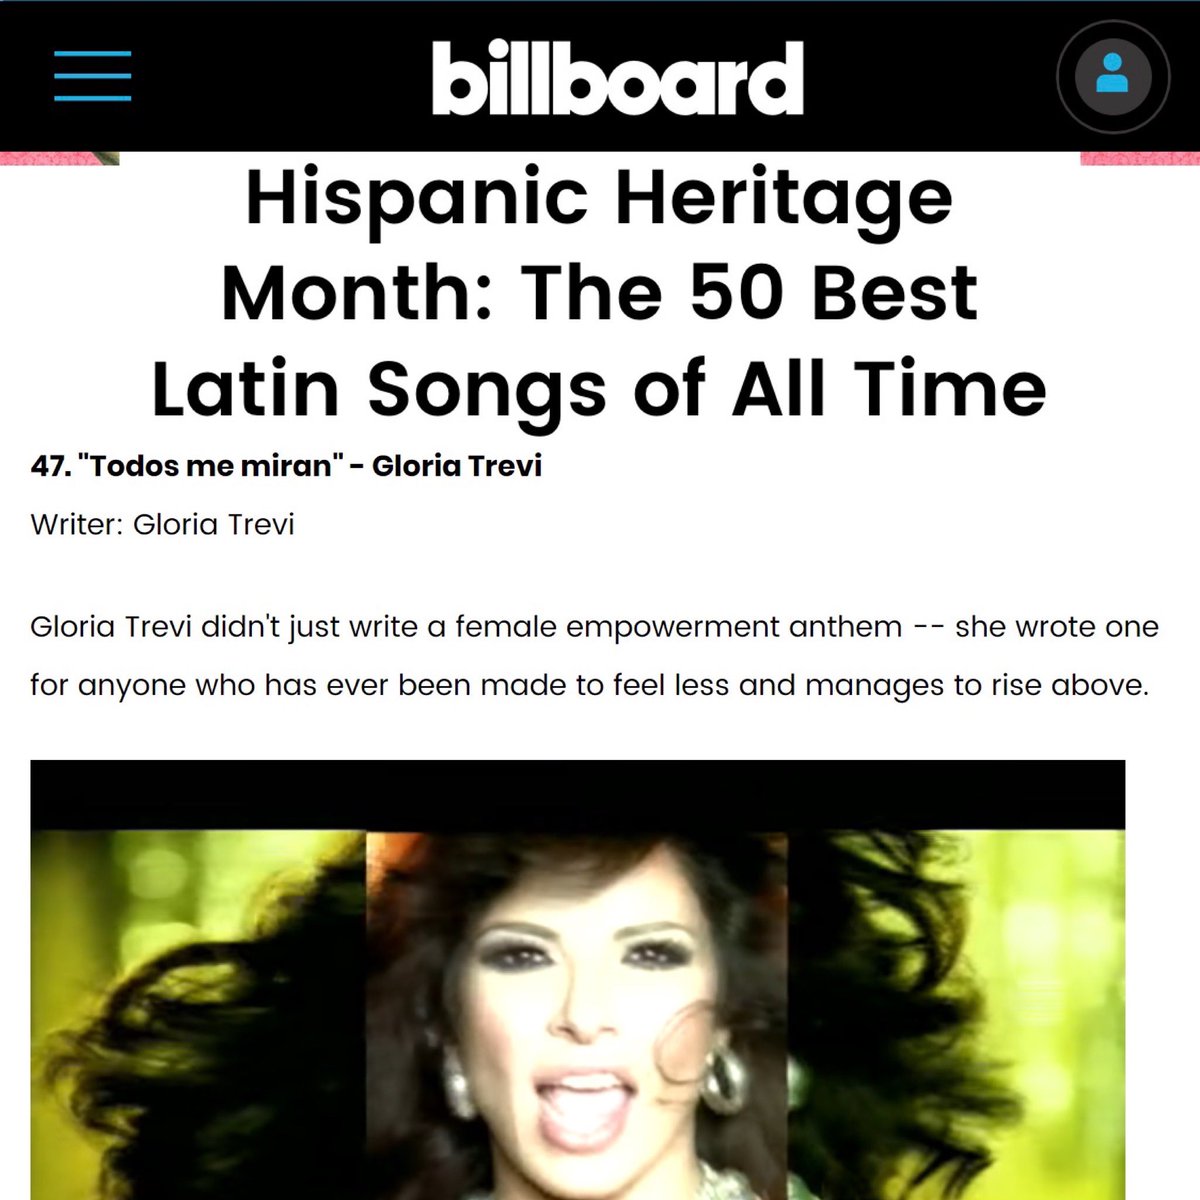 ¡Sigamos celebrando nuestra cultura! GRACIAS @billboardlatin @billboard por este reconocimiento 🙏🏻💖 #TodosMeMiran #GloriaTrevi #HispanicHeritageMonth #HispanicHeritage #Billboard 👉🏻 billboard.com/articles/colum…